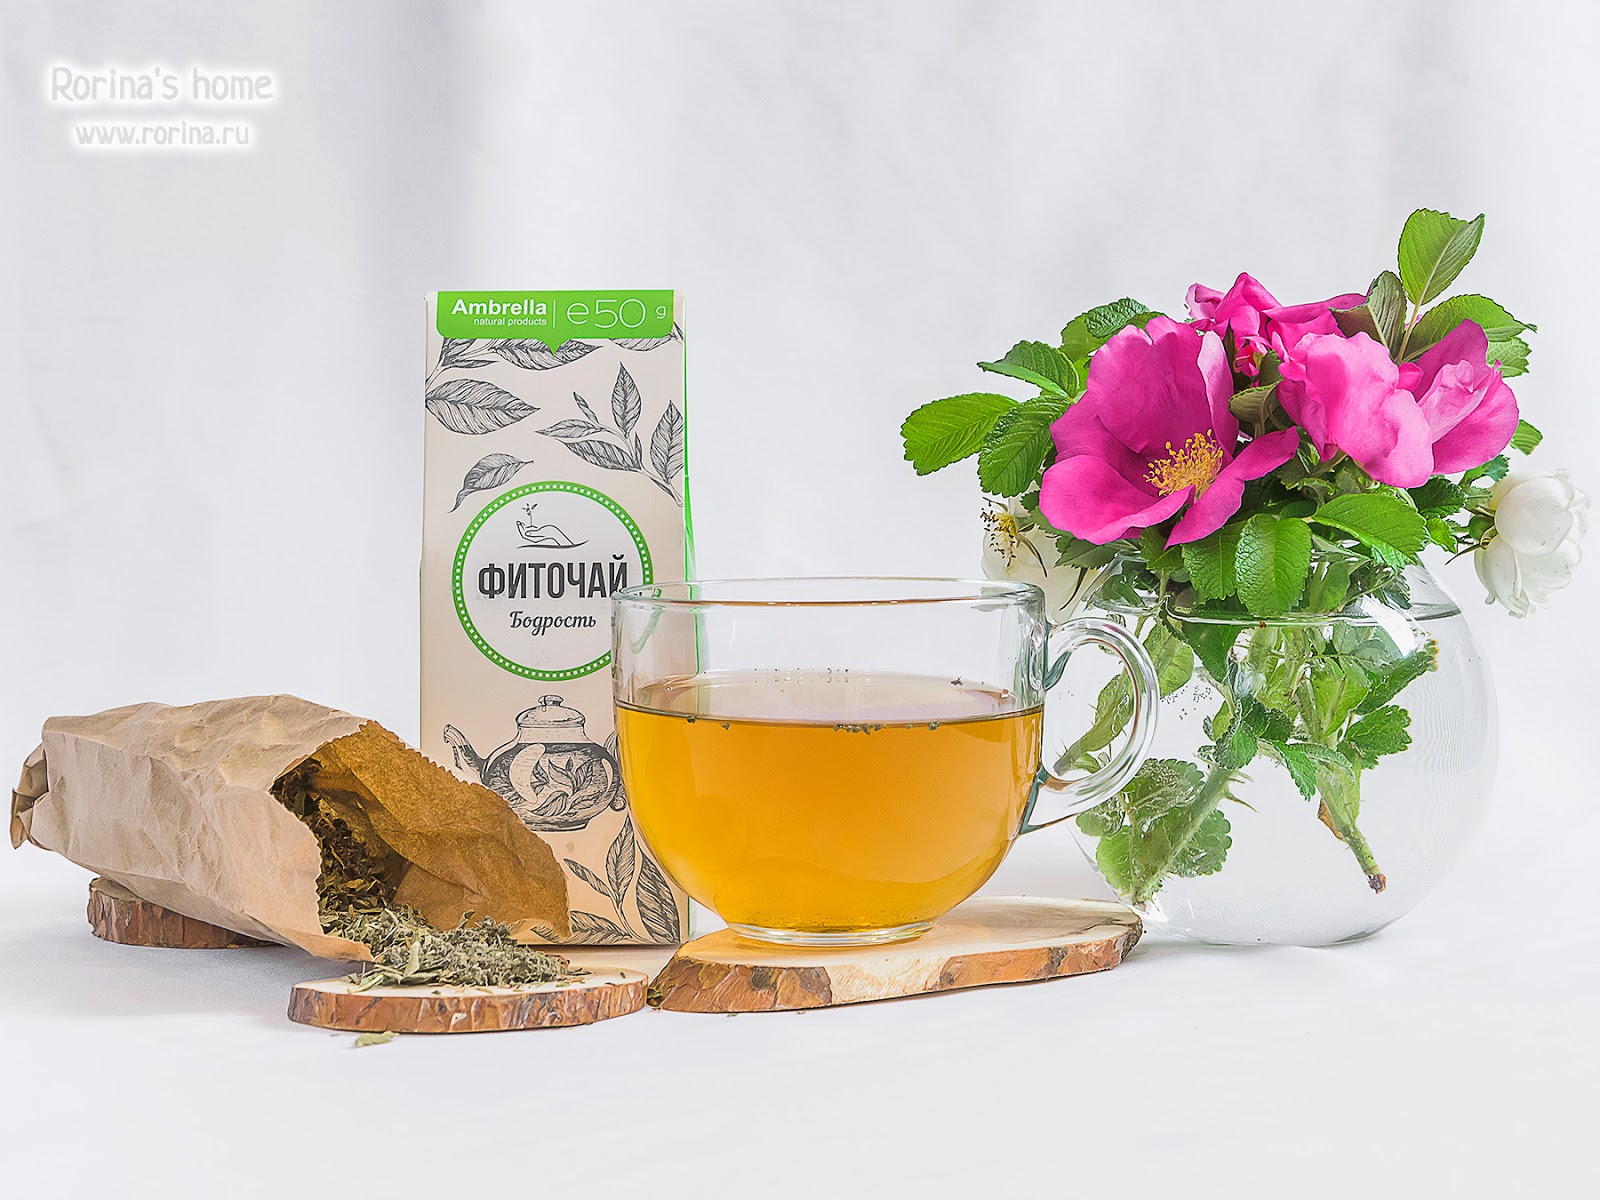 Чай зверобой мята. "Чай травяной" "бадан толстолистный". Травяной чай бодрость. Чай на травах. Чайные травы для бодрости.